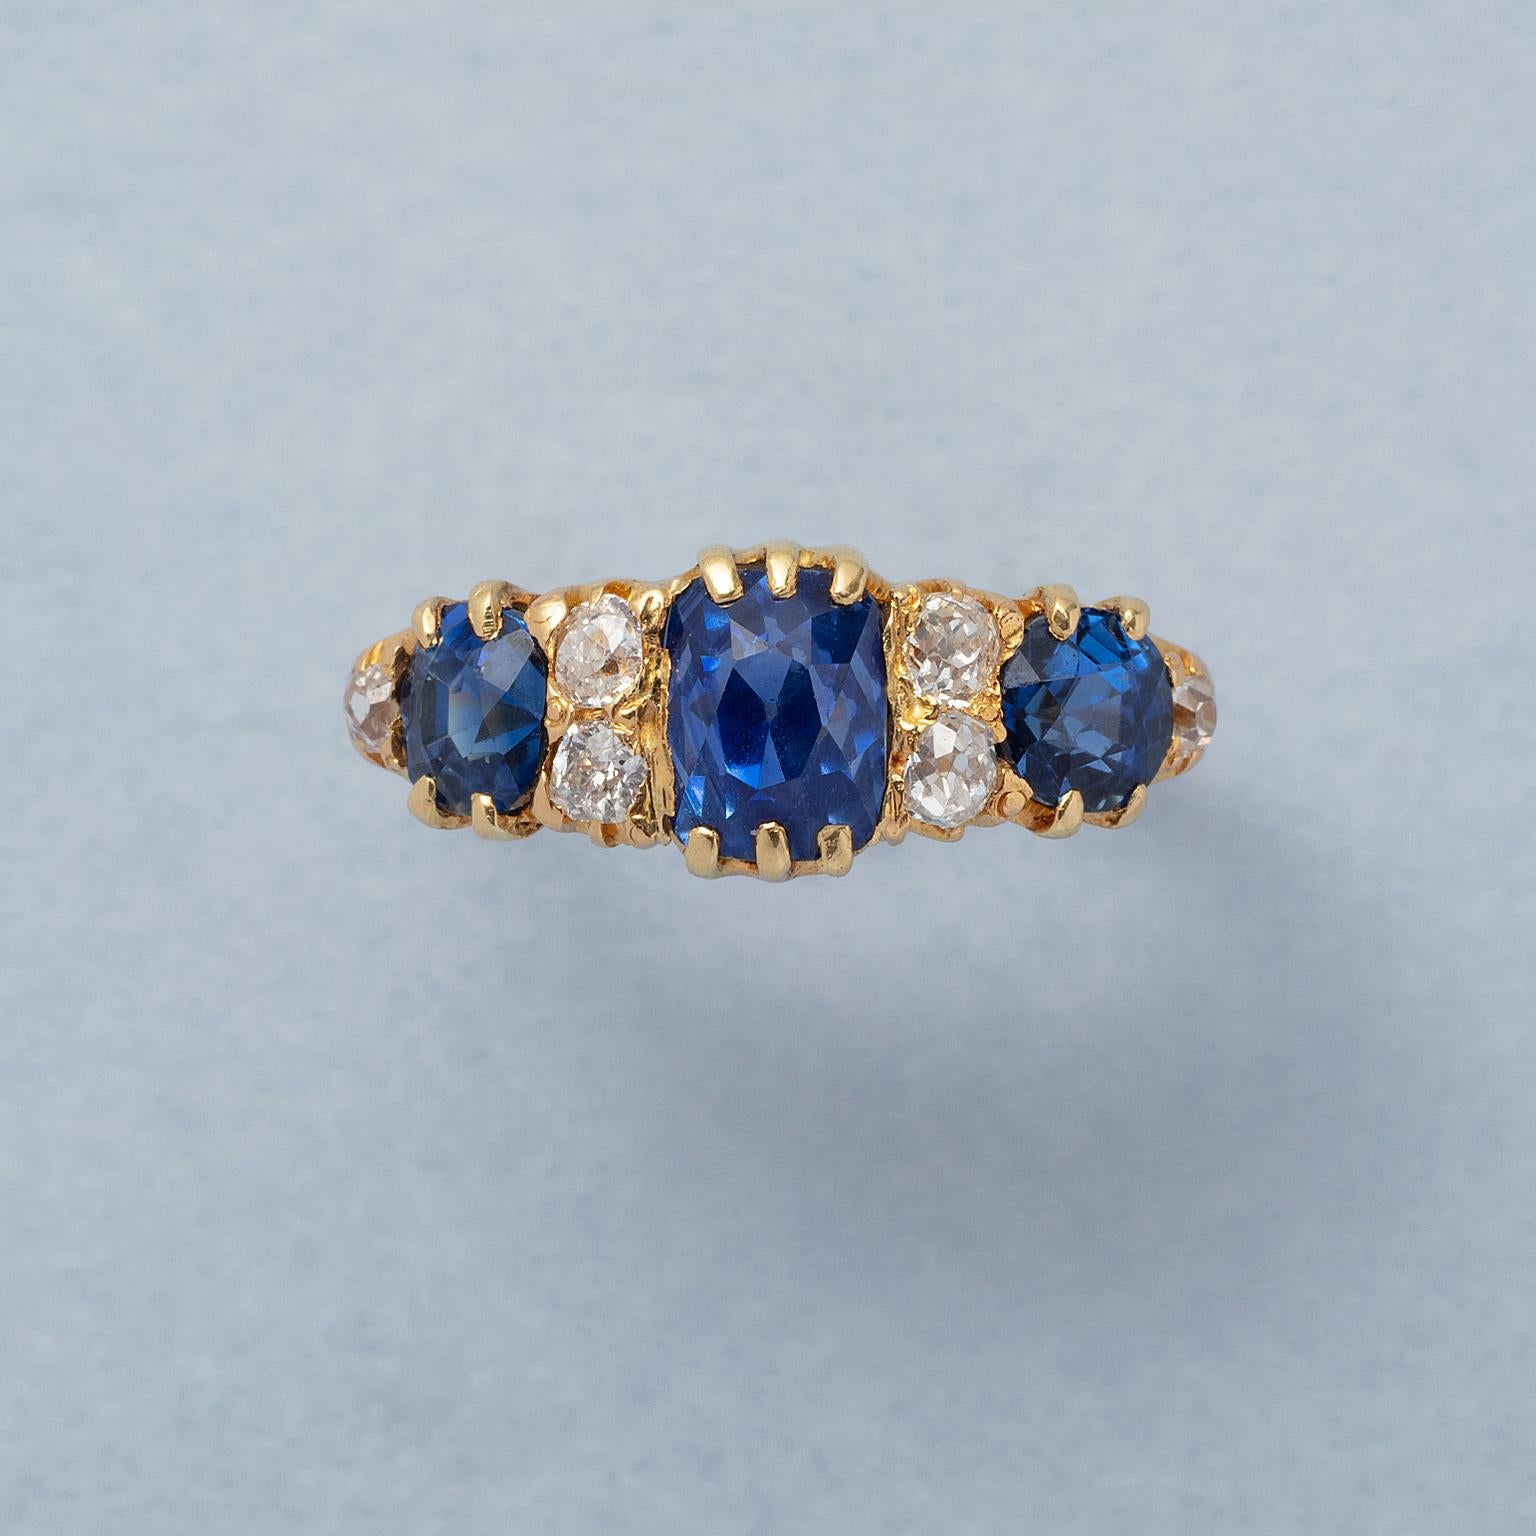 Ein Ring aus 18 Karat Gelbgold mit drei königsblauen, natürlichen, unerhitzten Saphiren mit jeweils zwei Diamanten im Kissenschliff dazwischen; insgesamt 6 Diamanten im Kissenschliff (ca. 0,42 ct). In der Mitte ein Saphir im Kissenschliff mit einem